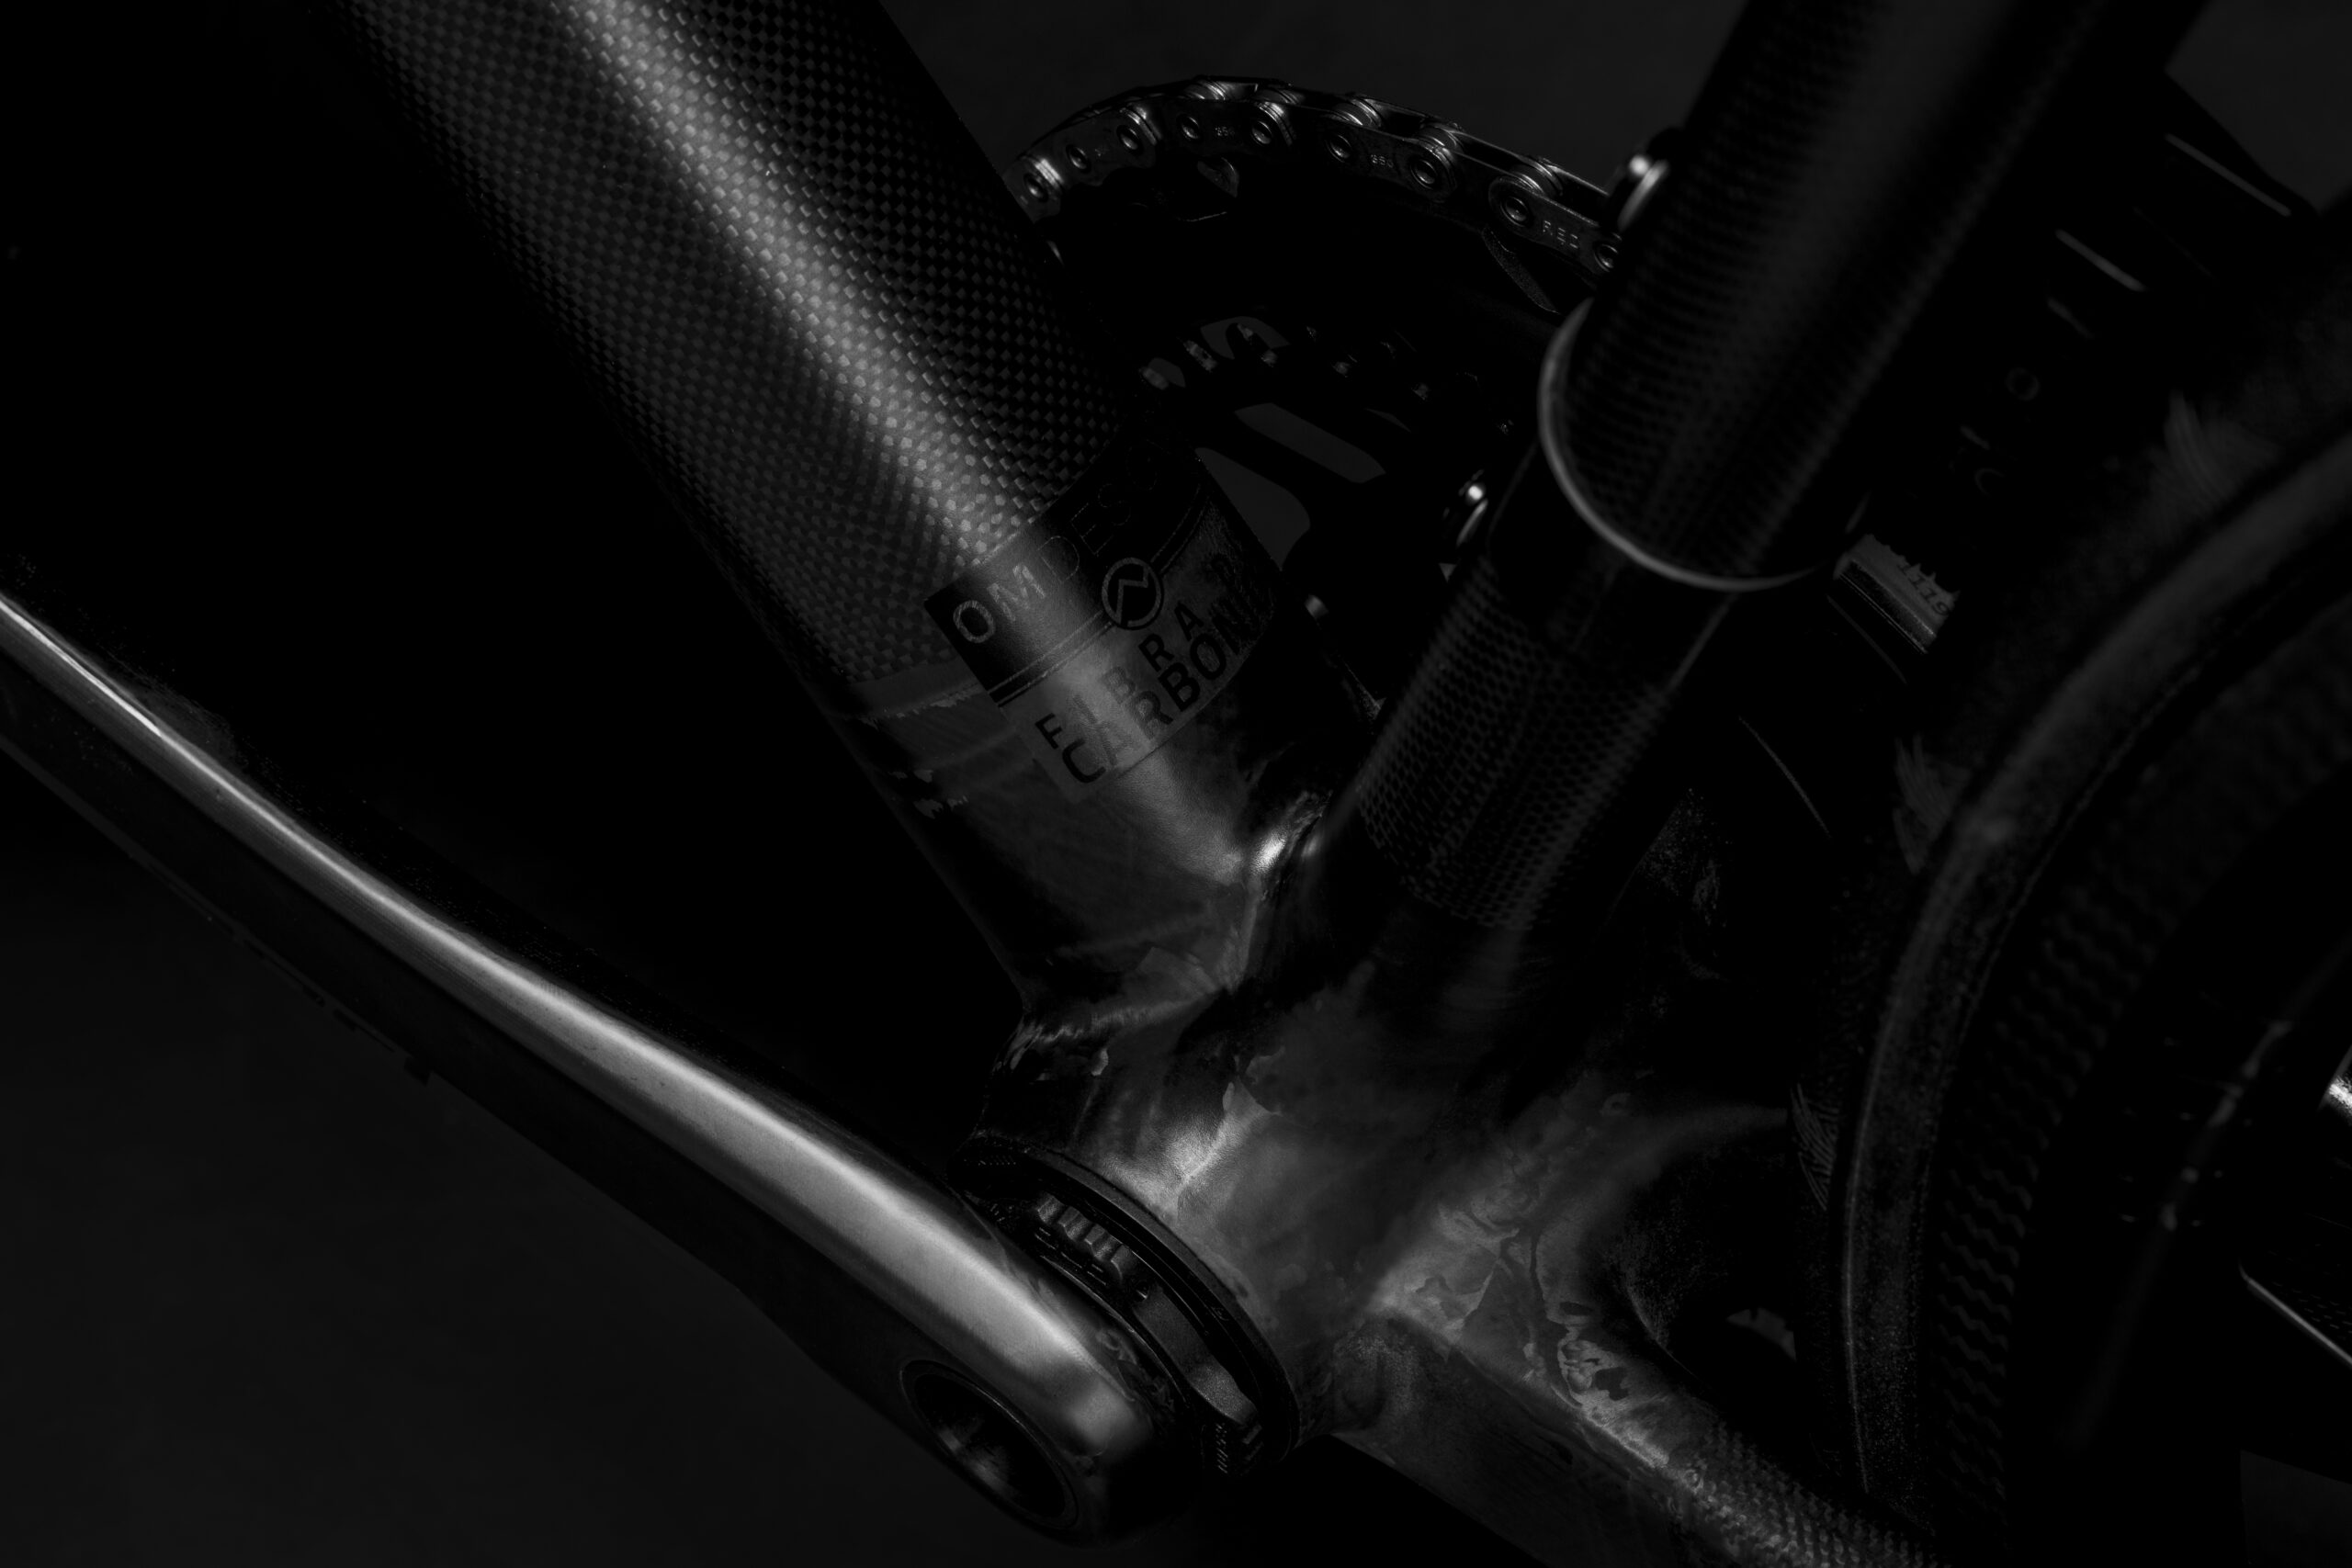 Bicicletta Officine Mattio modello SL, produzione made in italy fotografia dettaglio logo fibra di carbonio